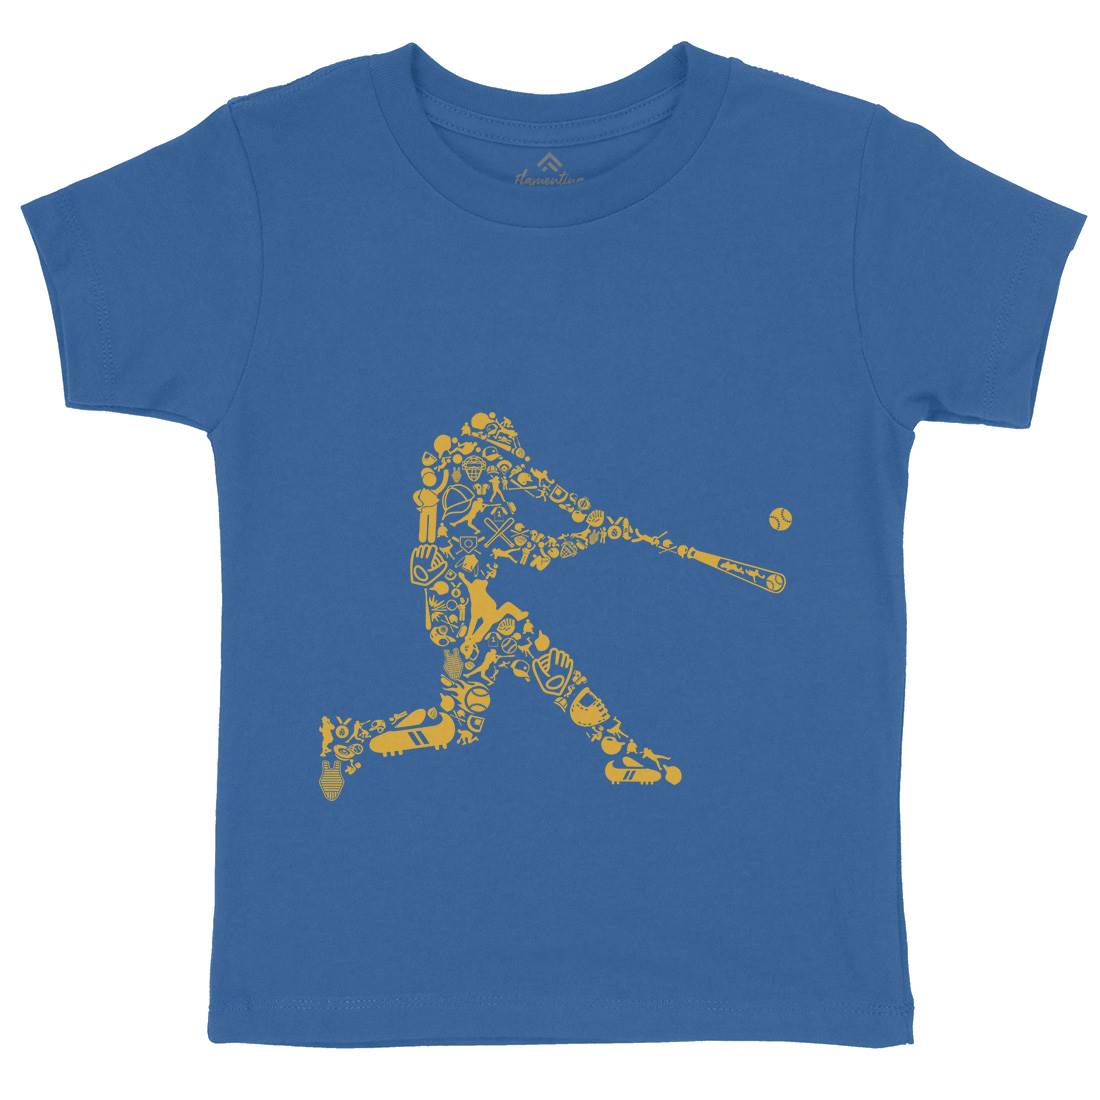 Baseball Player Kids Crew Neck T-Shirt Sport B007